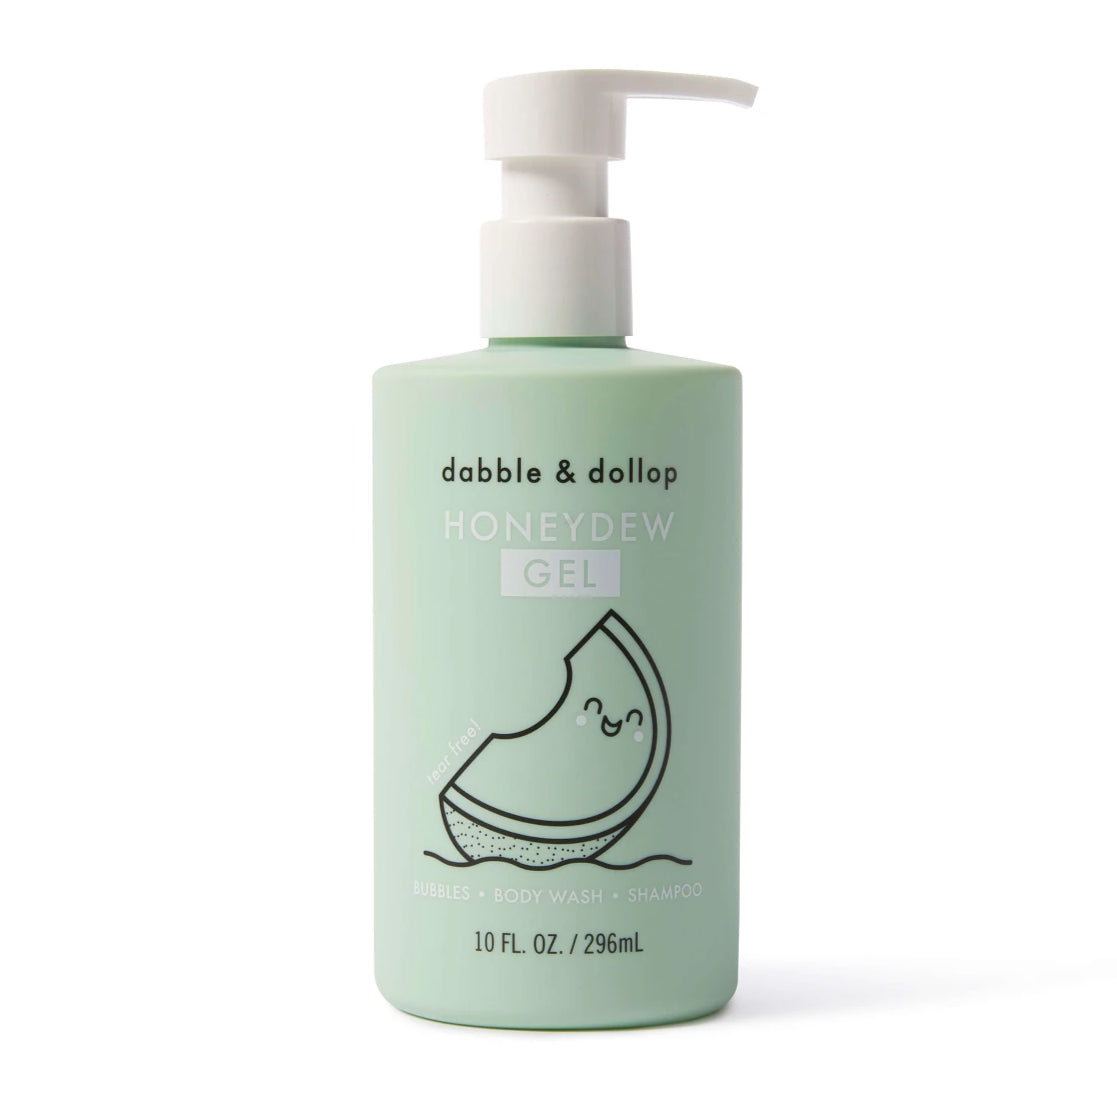 Dabble & Dollop - Honeydew Shampoo, Bubble Bath & Body Wash